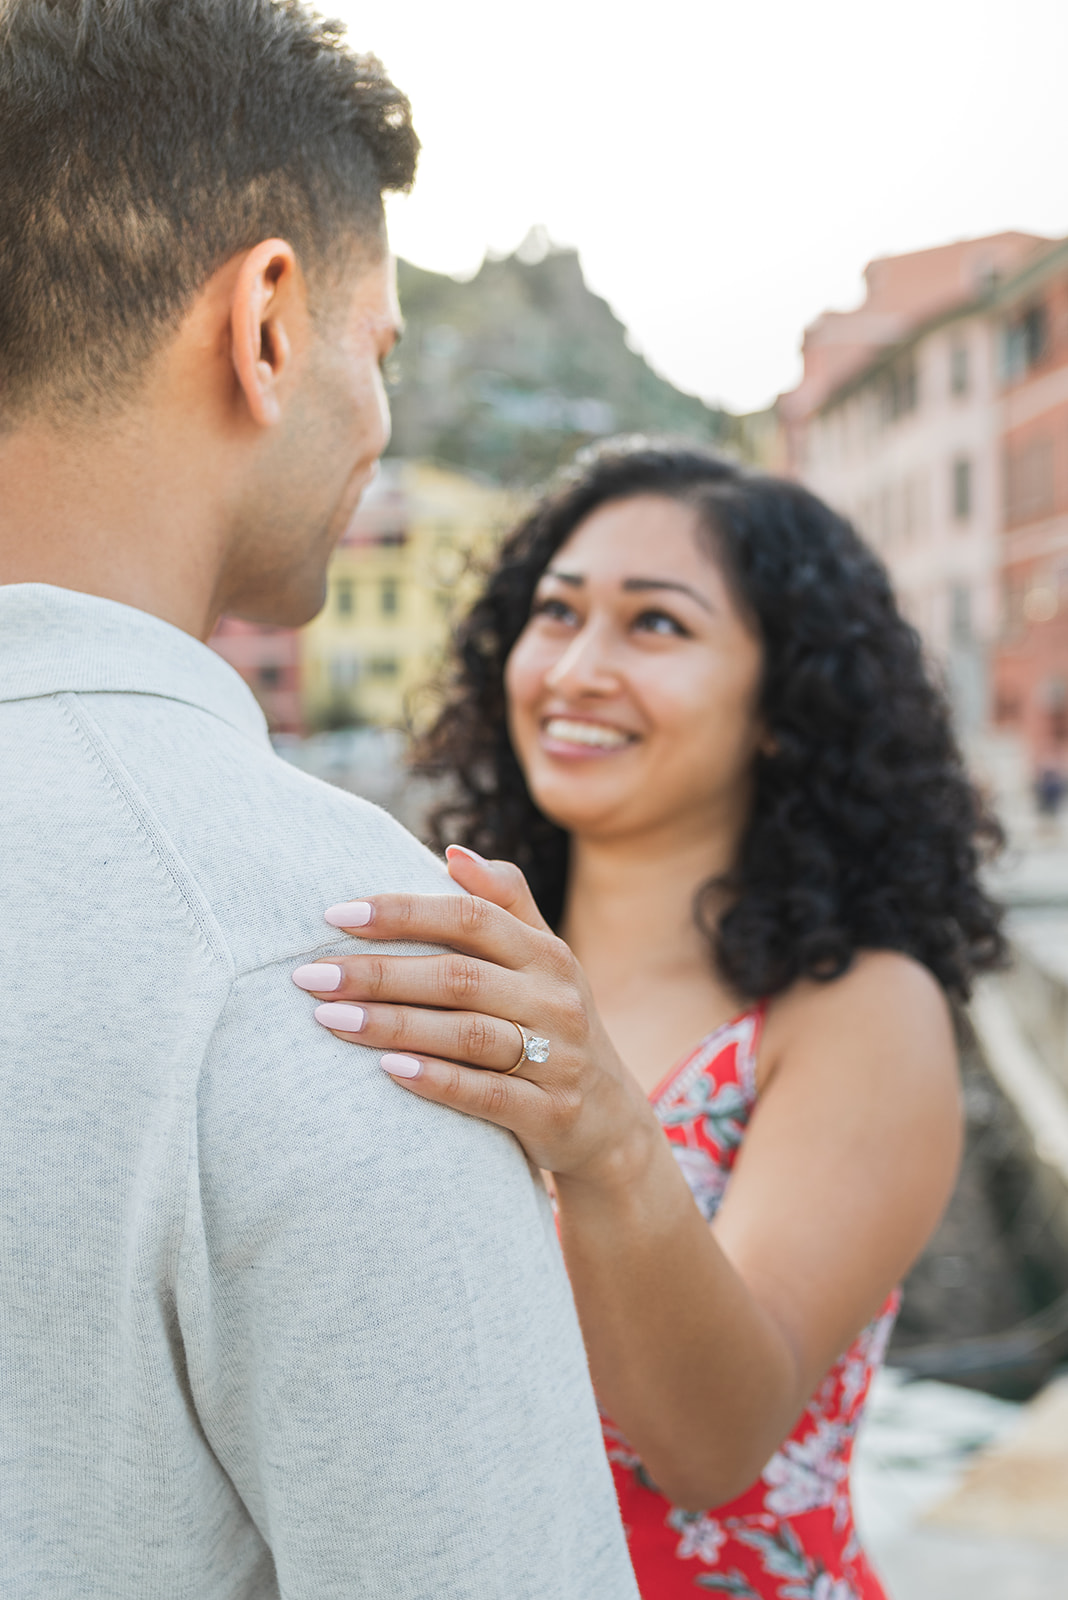 Vernazza Wedding proposal in Cinque Terre